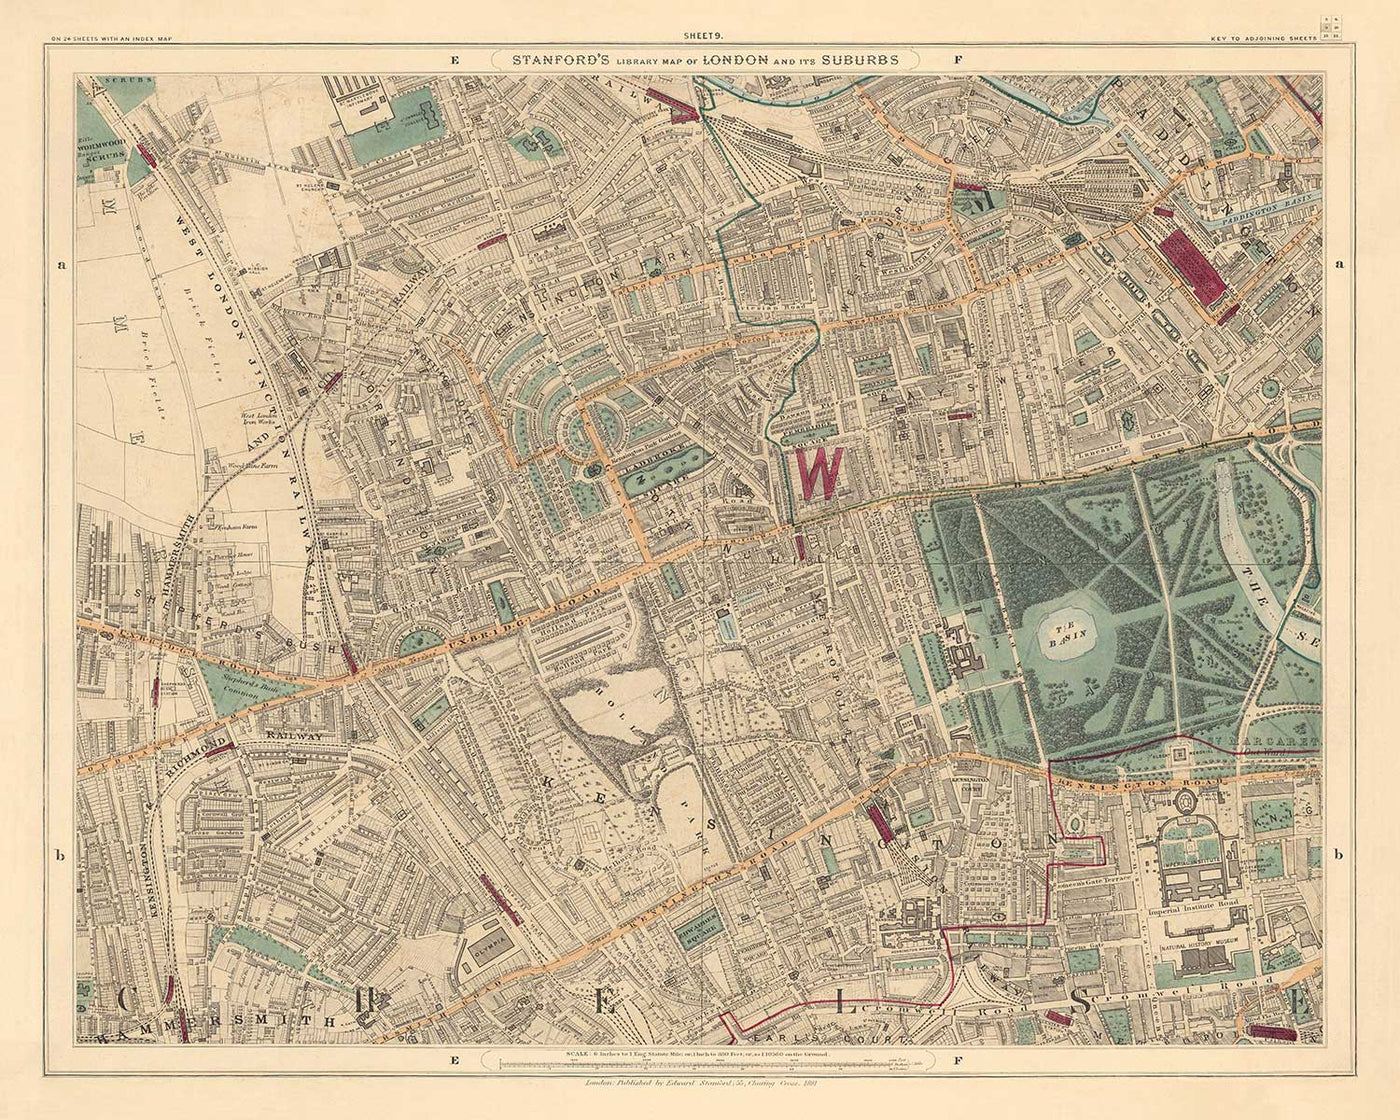 Old Colour Map of West London - Notting Hill, Kensington, Portobello Road, Shepherds Bush, Bayswater - W11 W2 W8 SW7 W14 W6 W12 W10